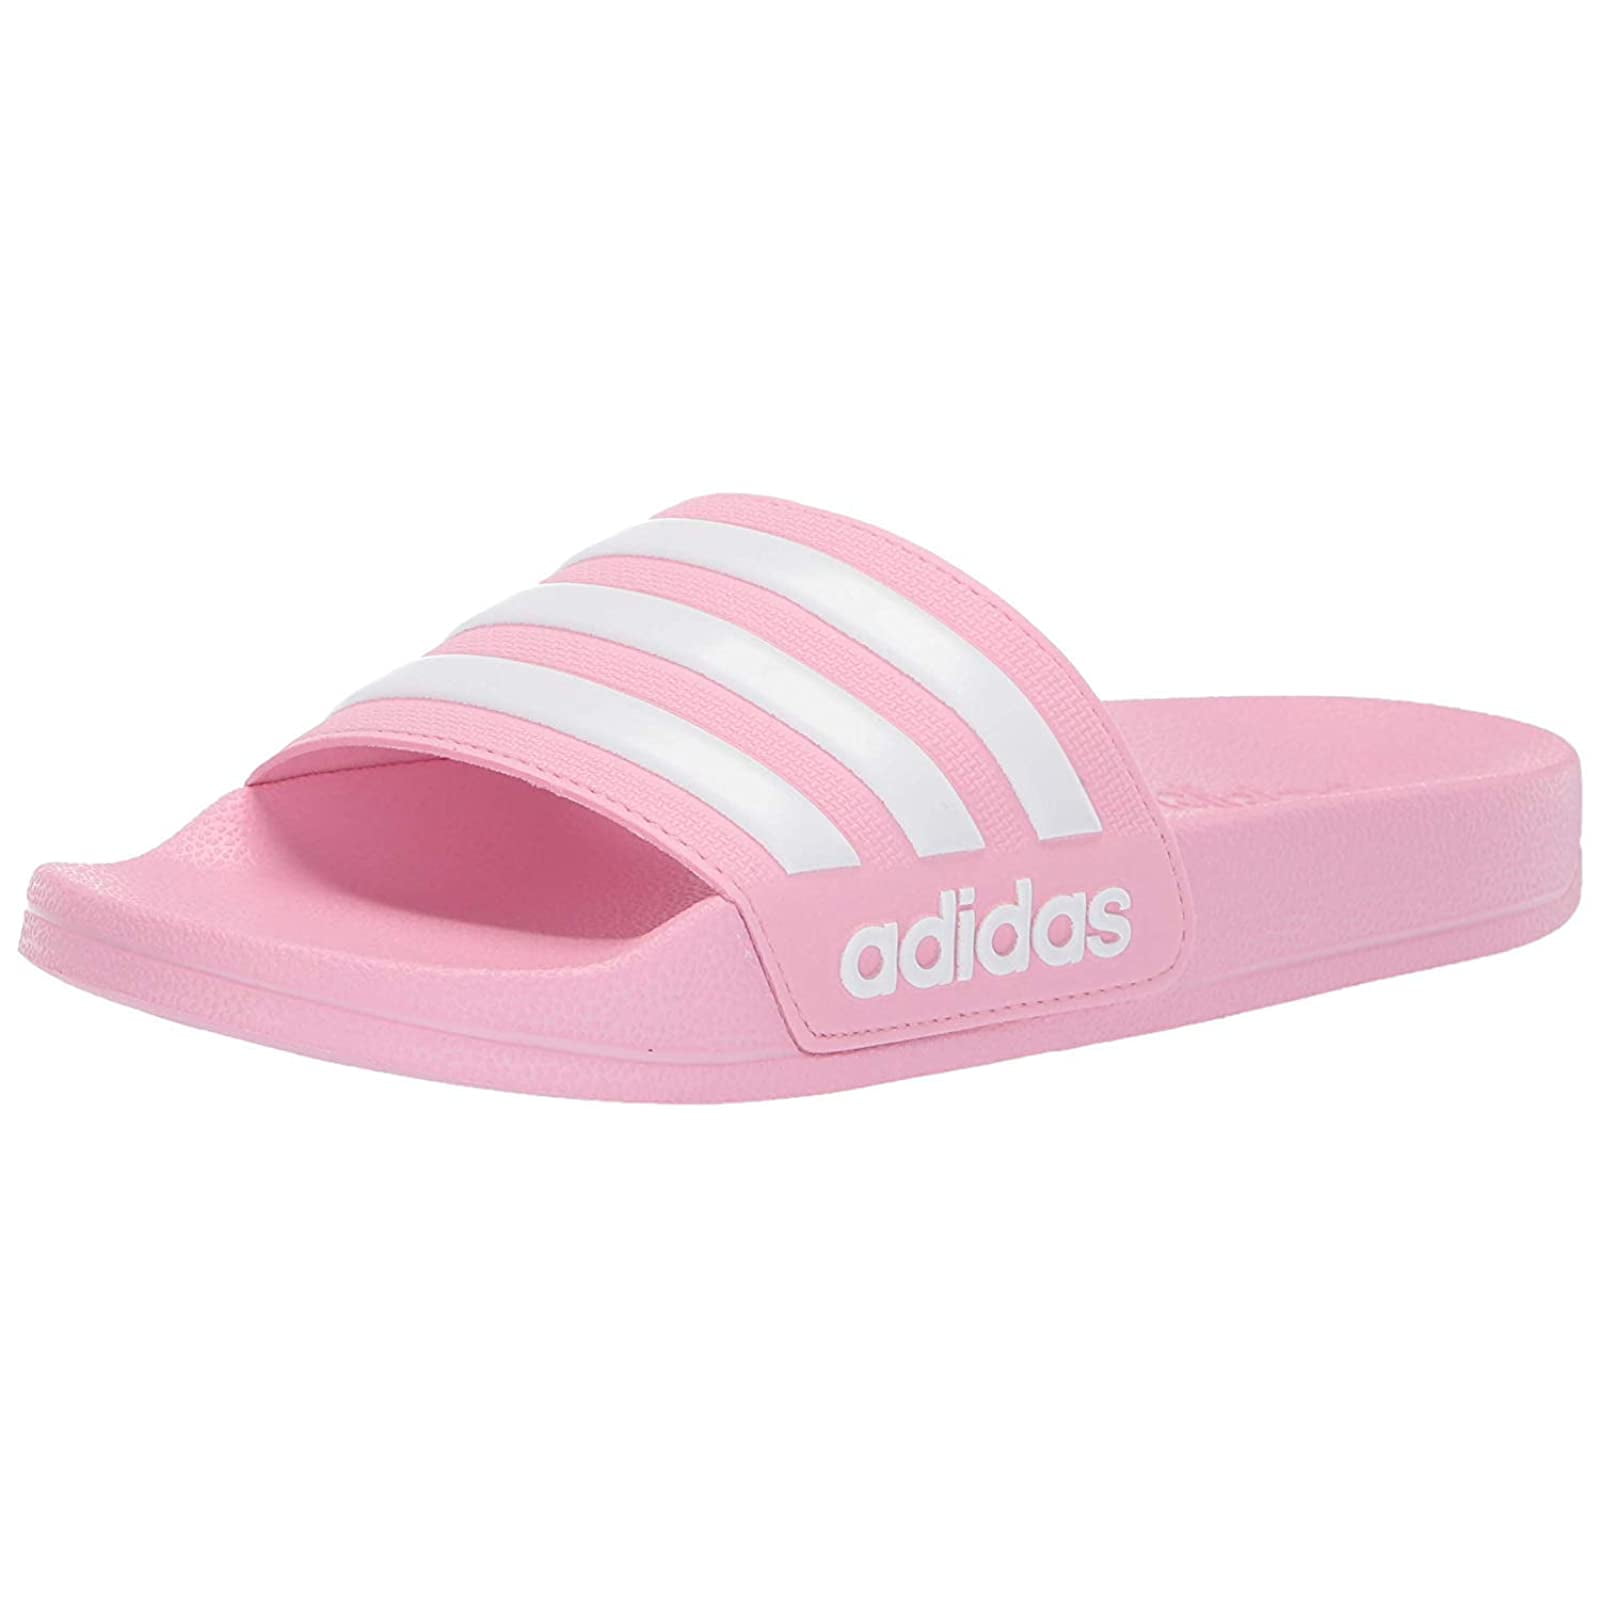 sandal adidas pink